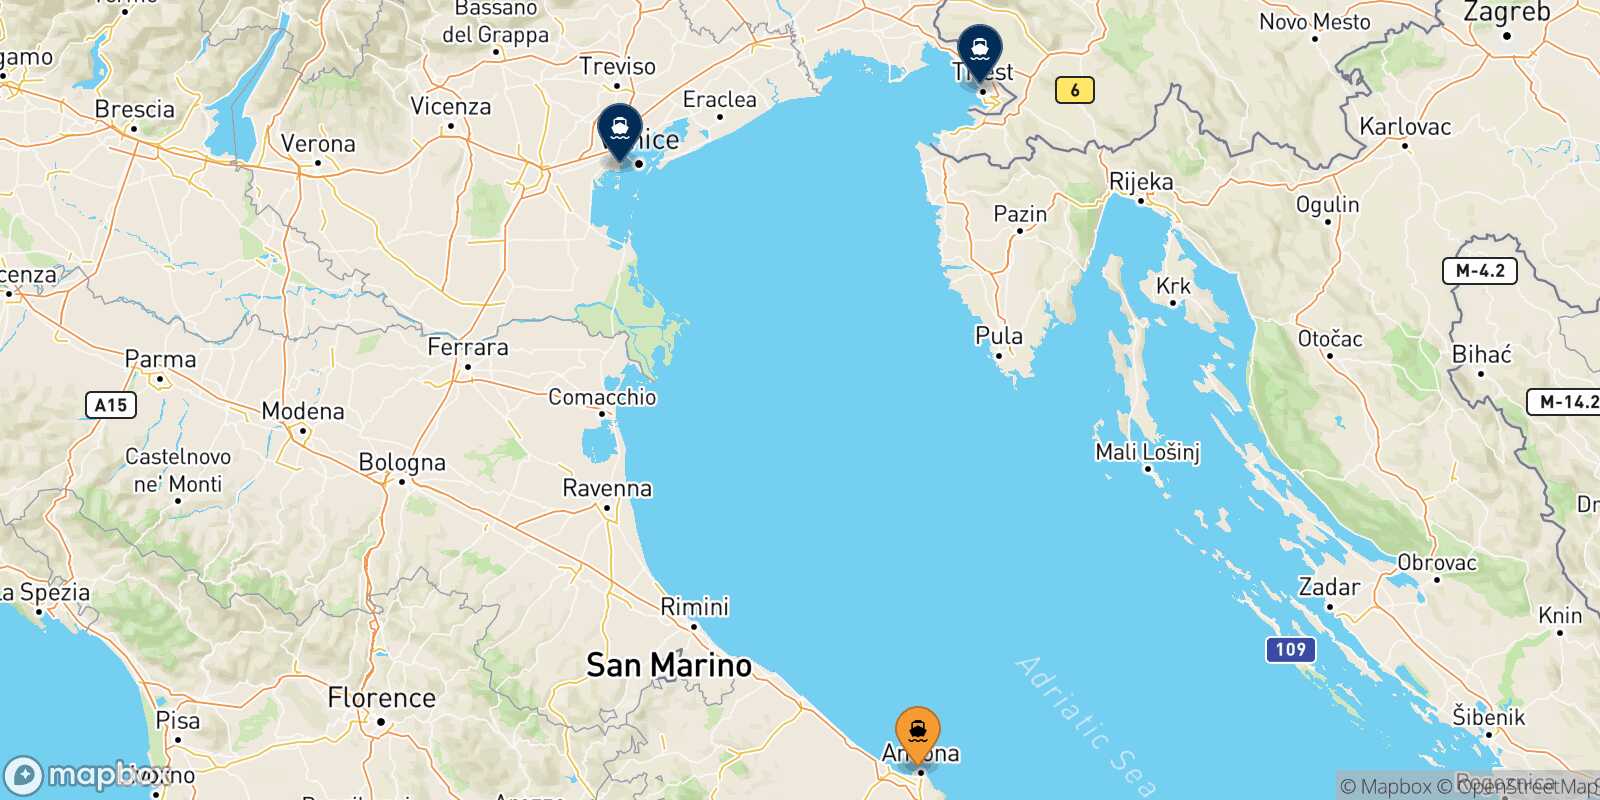 Mappa delle destinazioni raggiungibili da Ancona